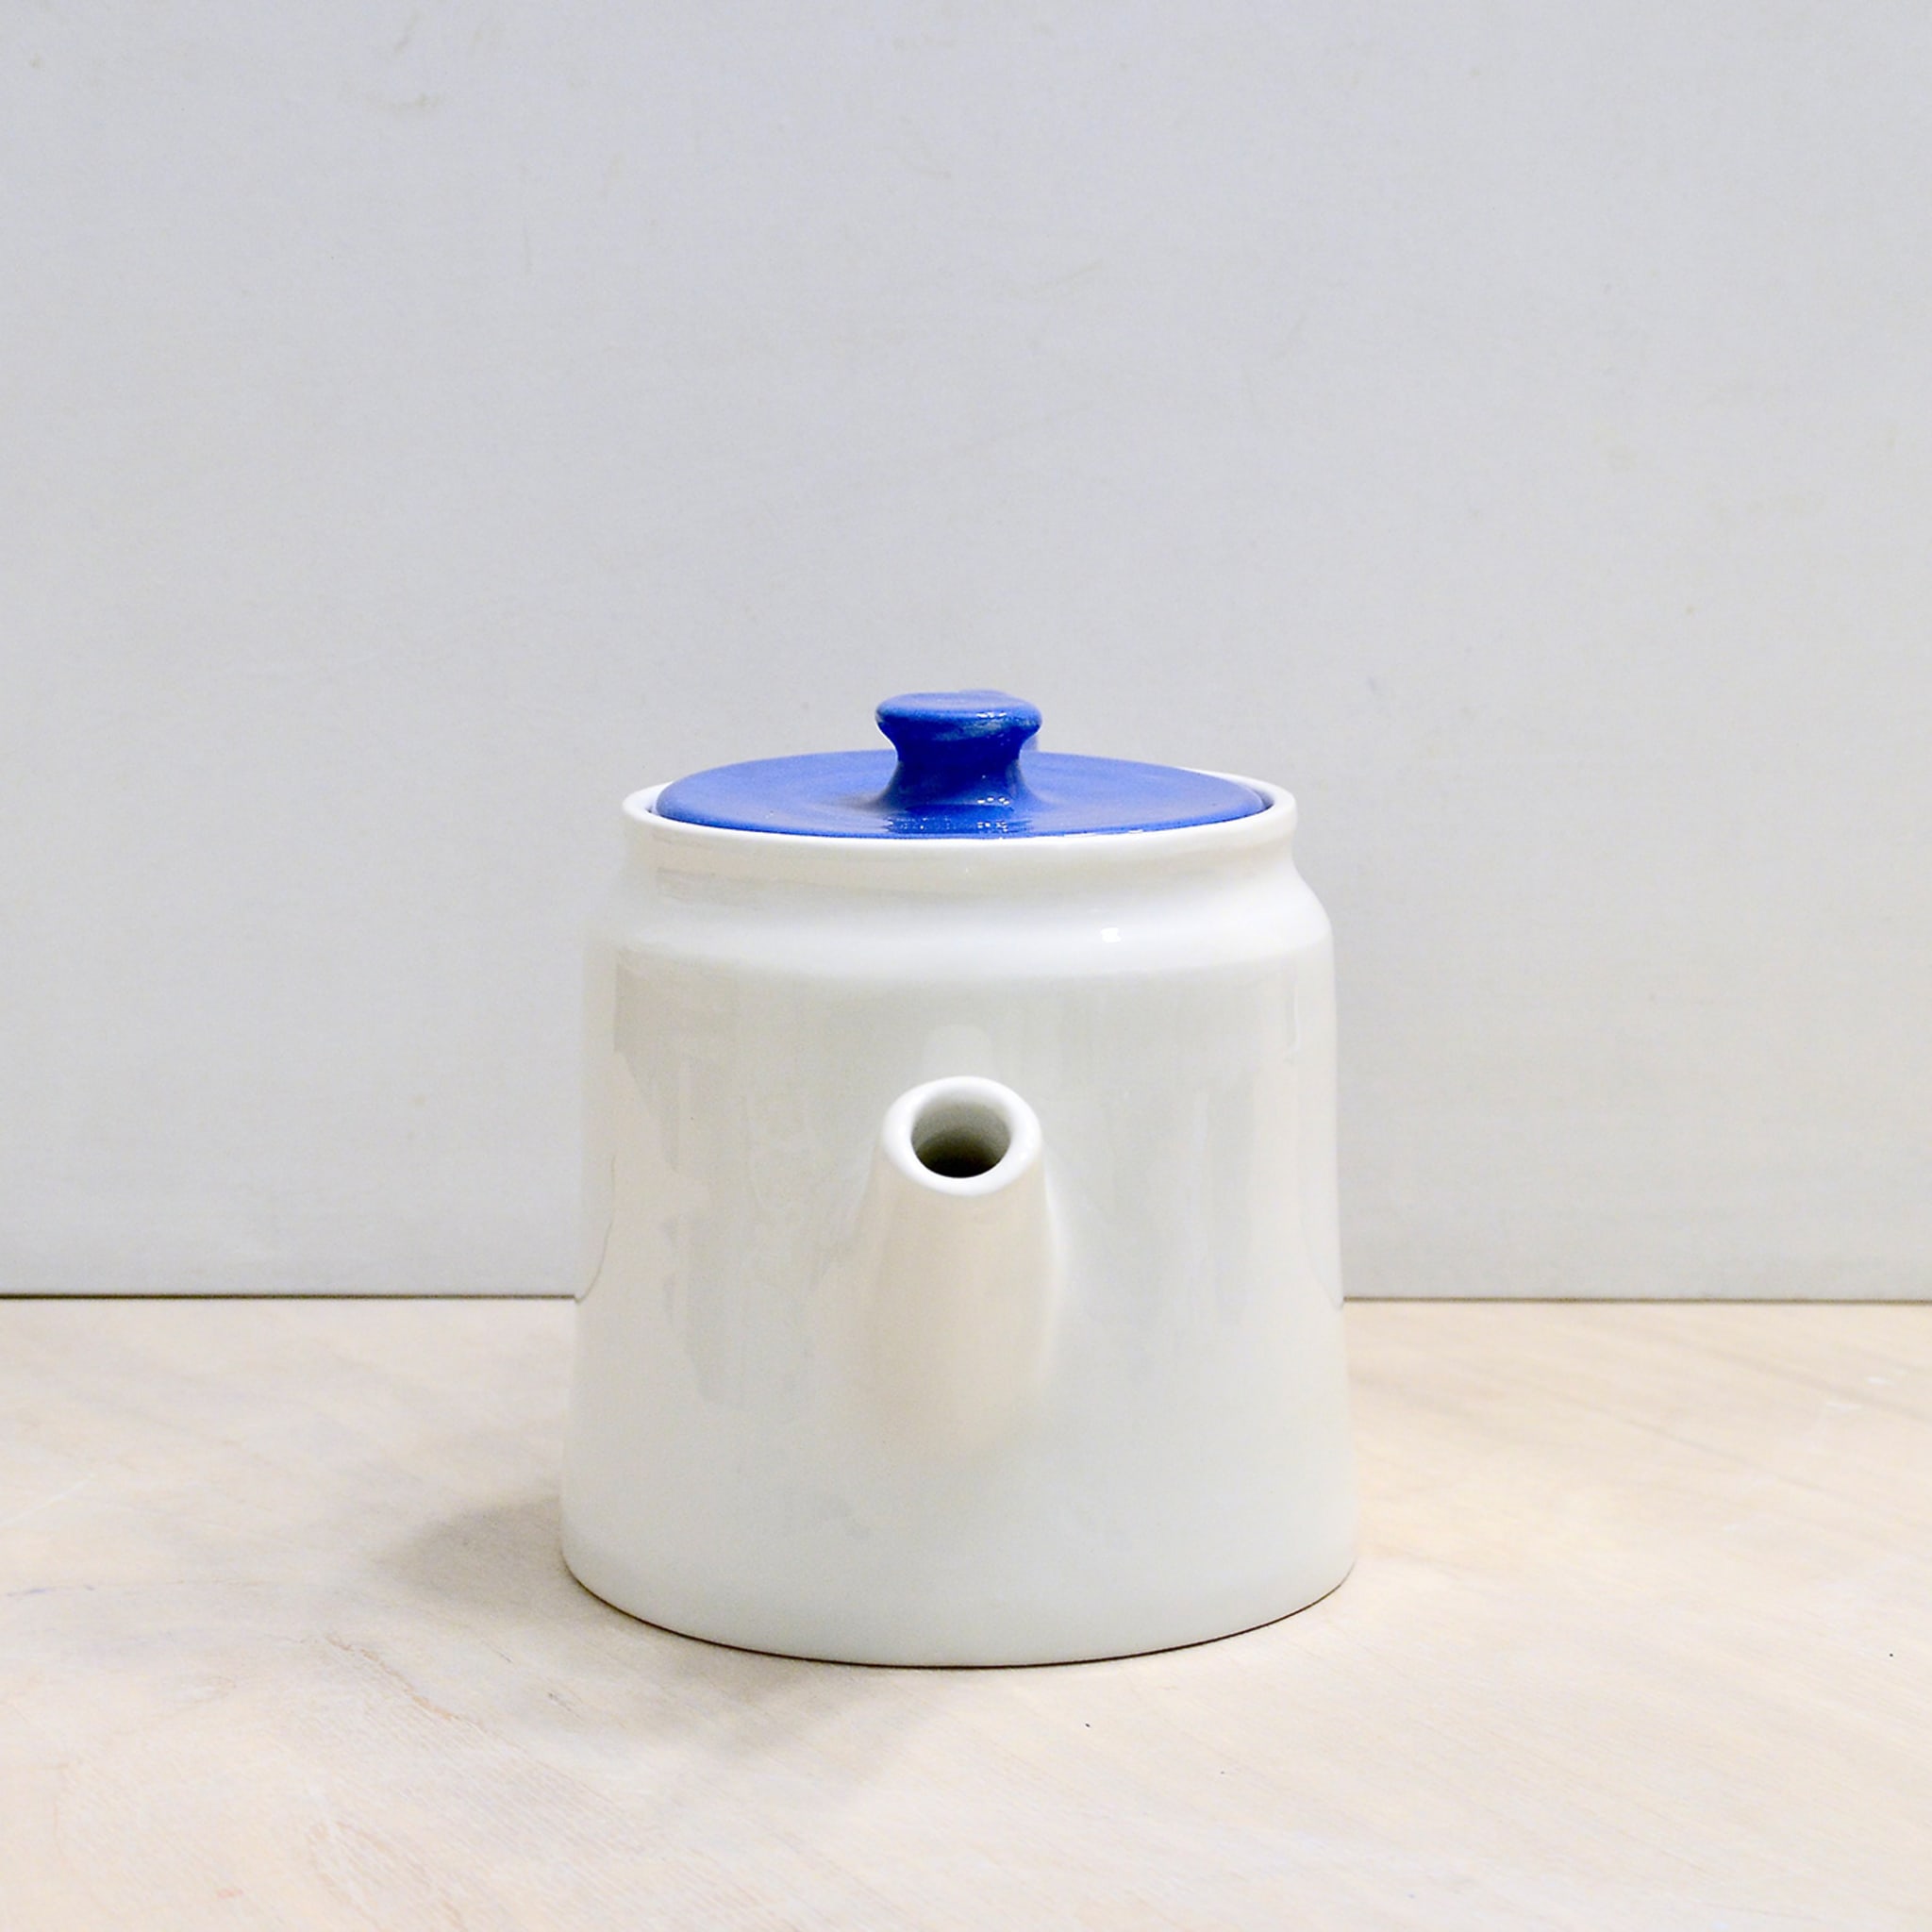 Polpo Blue&White Teapot - Alternative view 2